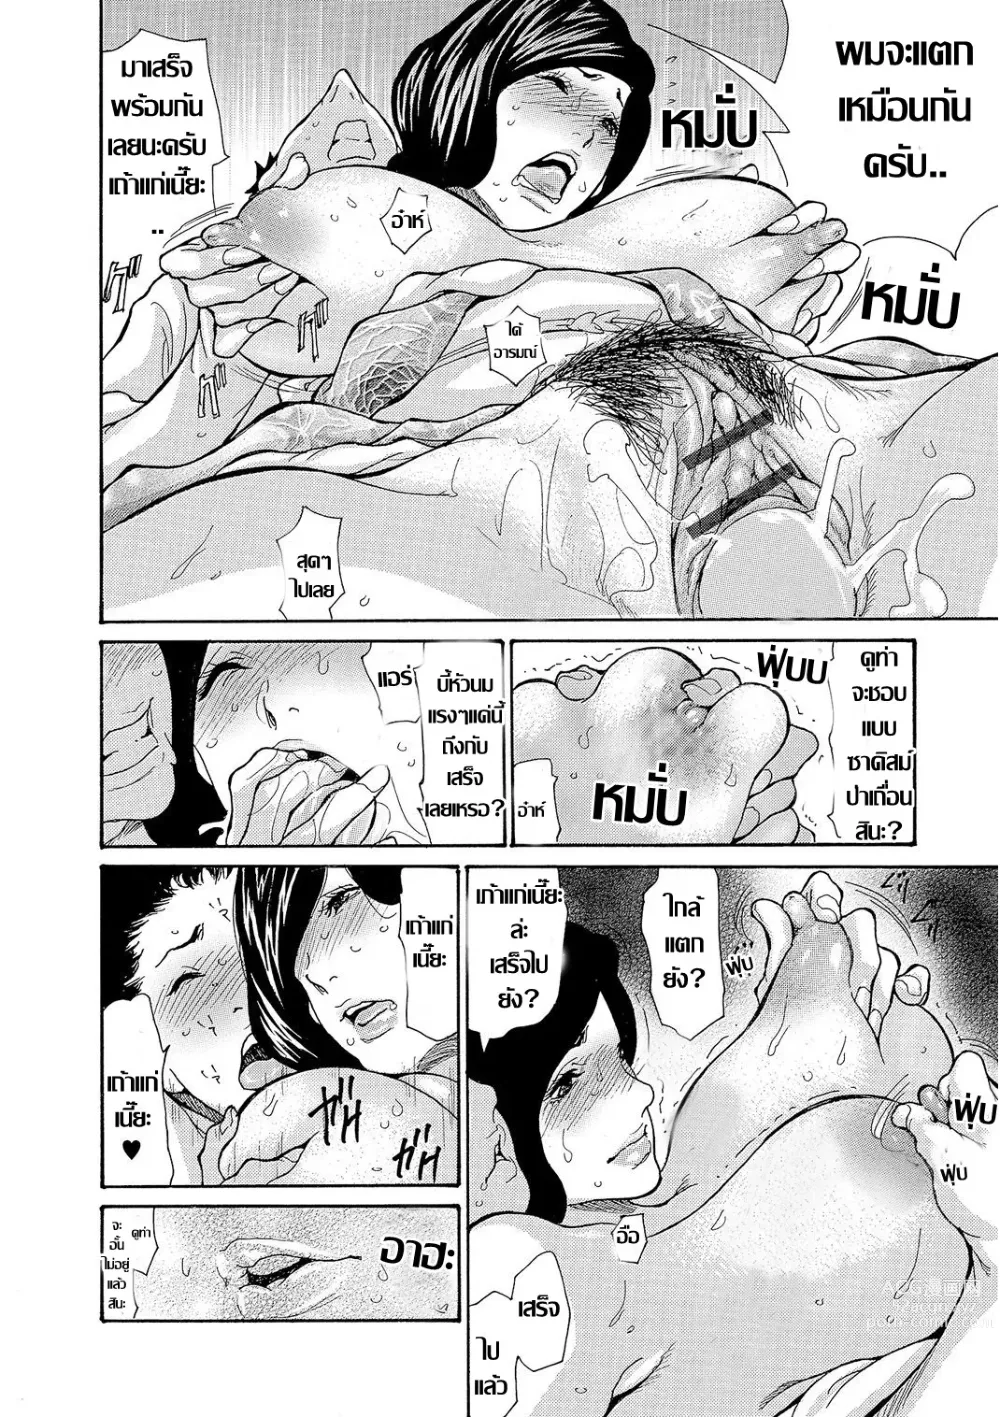 Page 58 of doujinshi Onsen Okami Netorare Hiwa 1-3